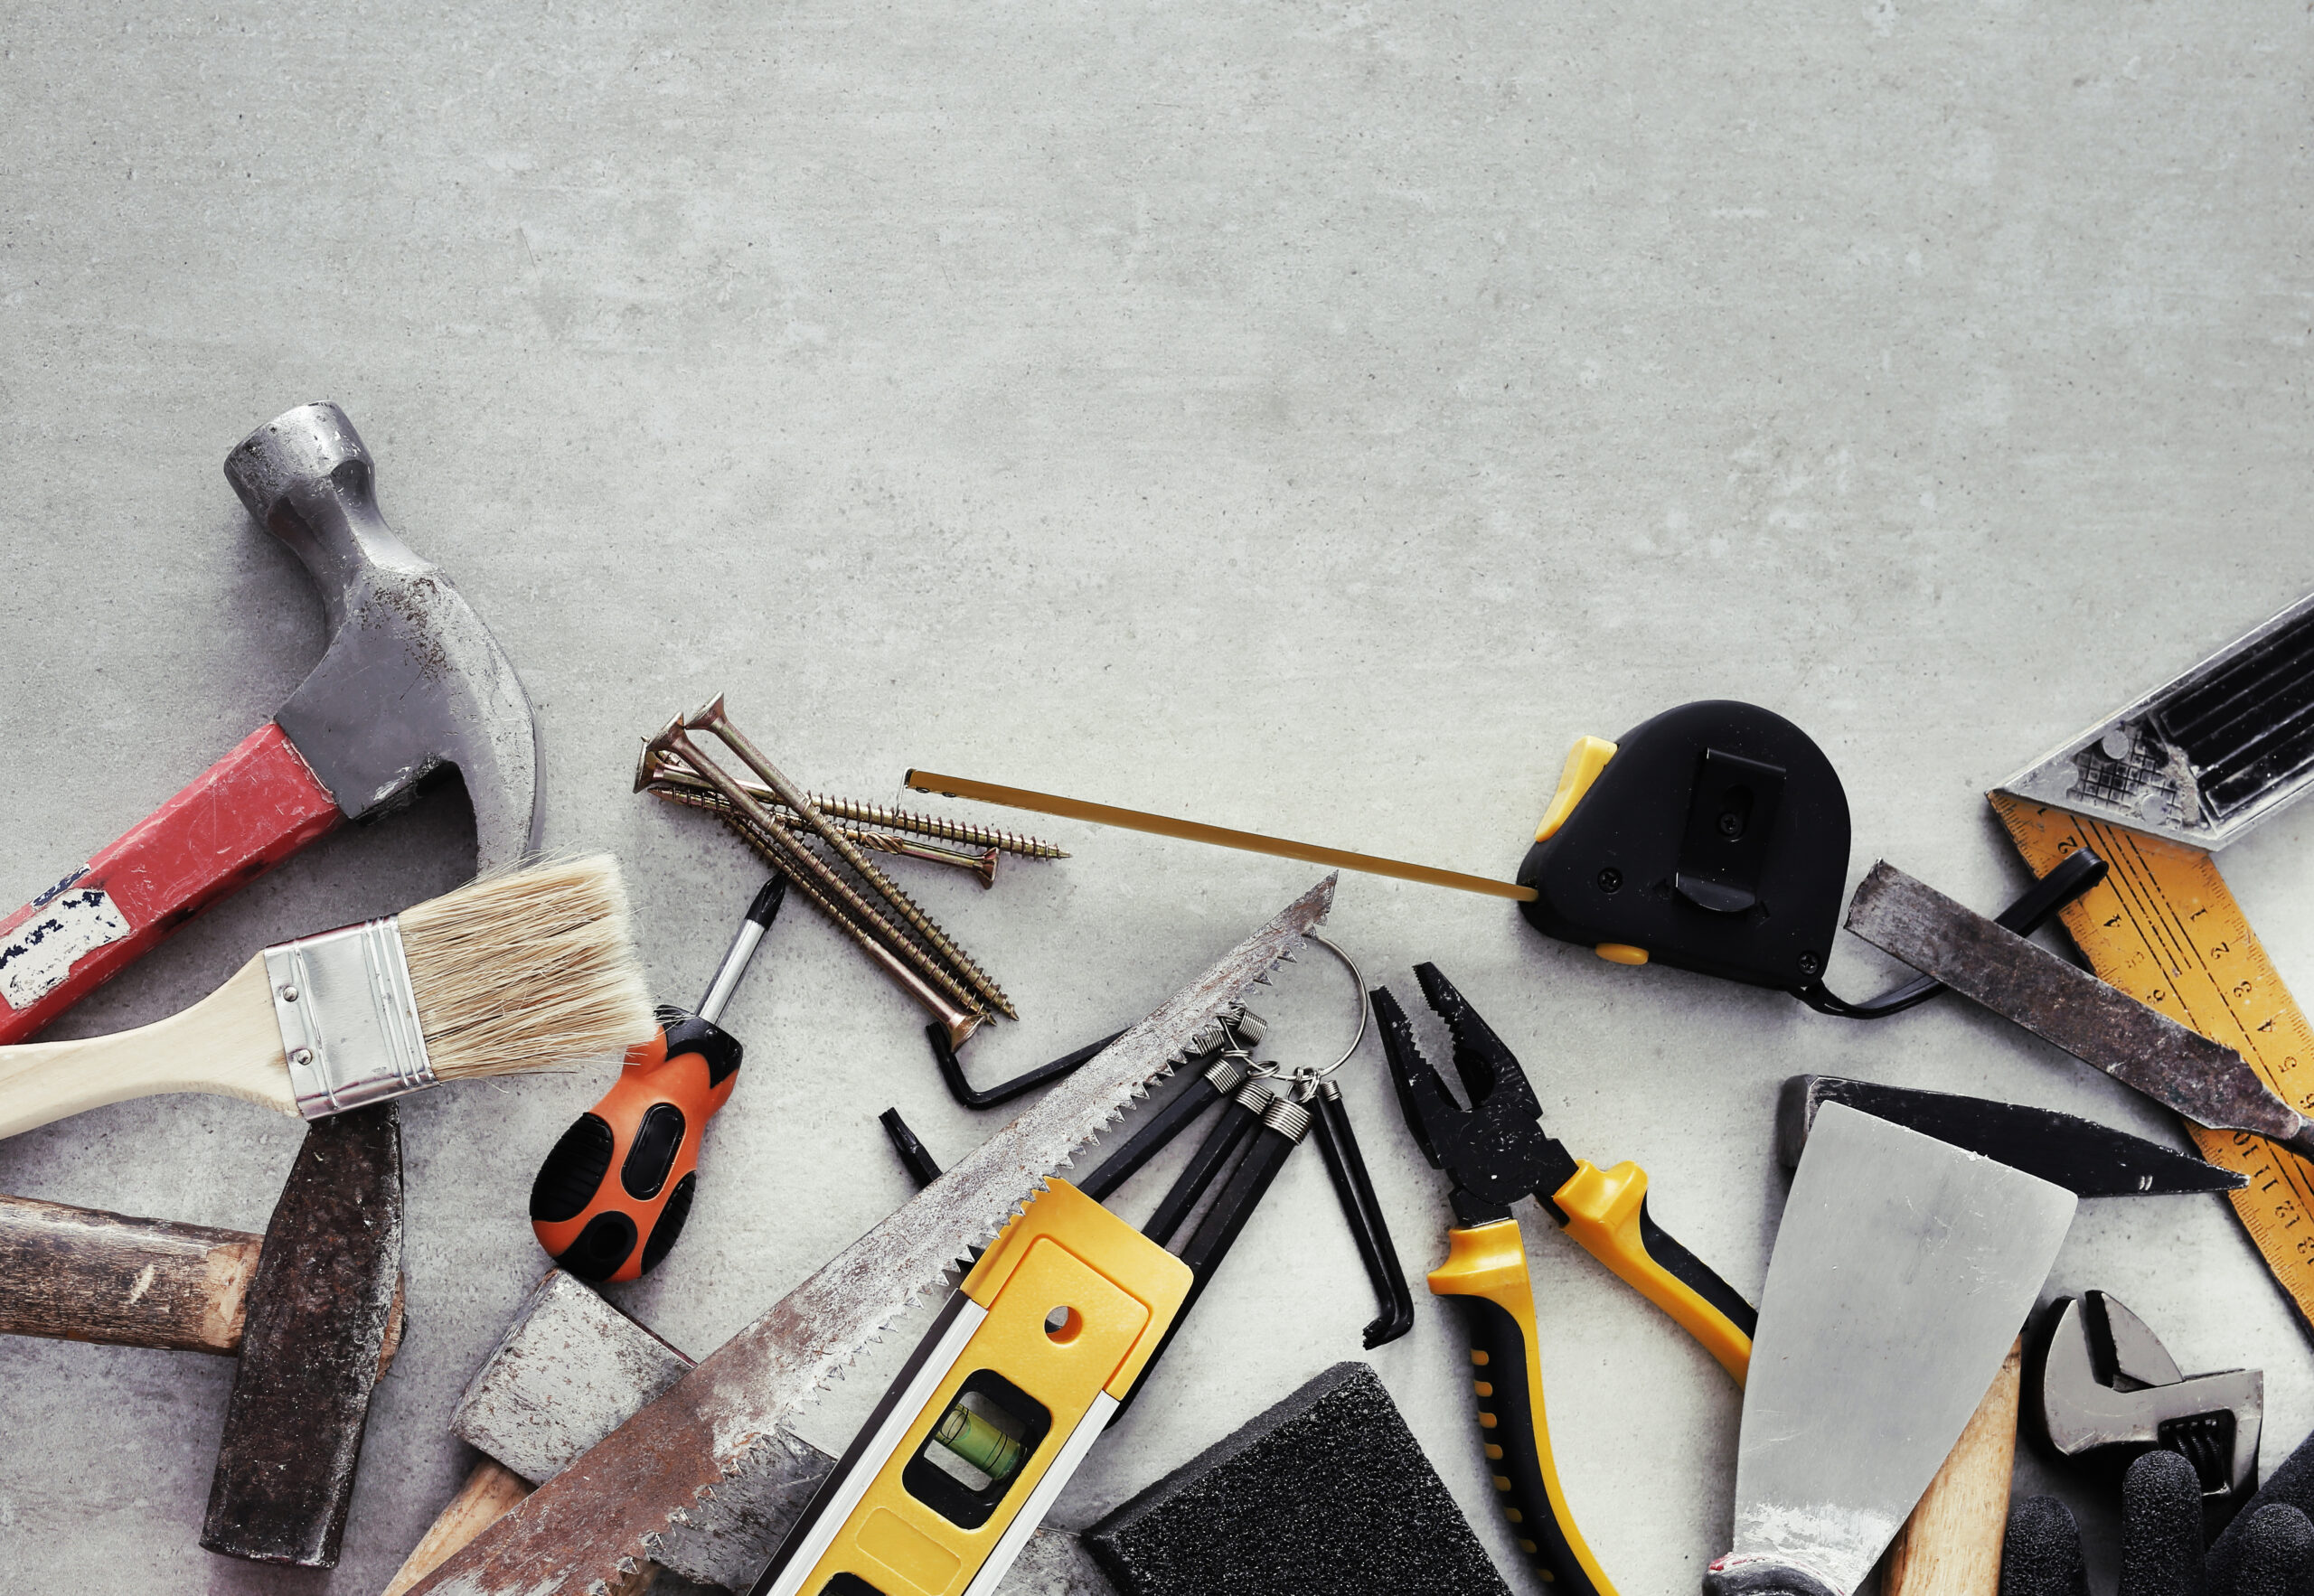 Das Bild zeigt mehrere Werkzeuge wie Hammer, Pinsel, Schrauben, Schraubenziehe und Zangen, die auf einem grauen Betonboden liegen.